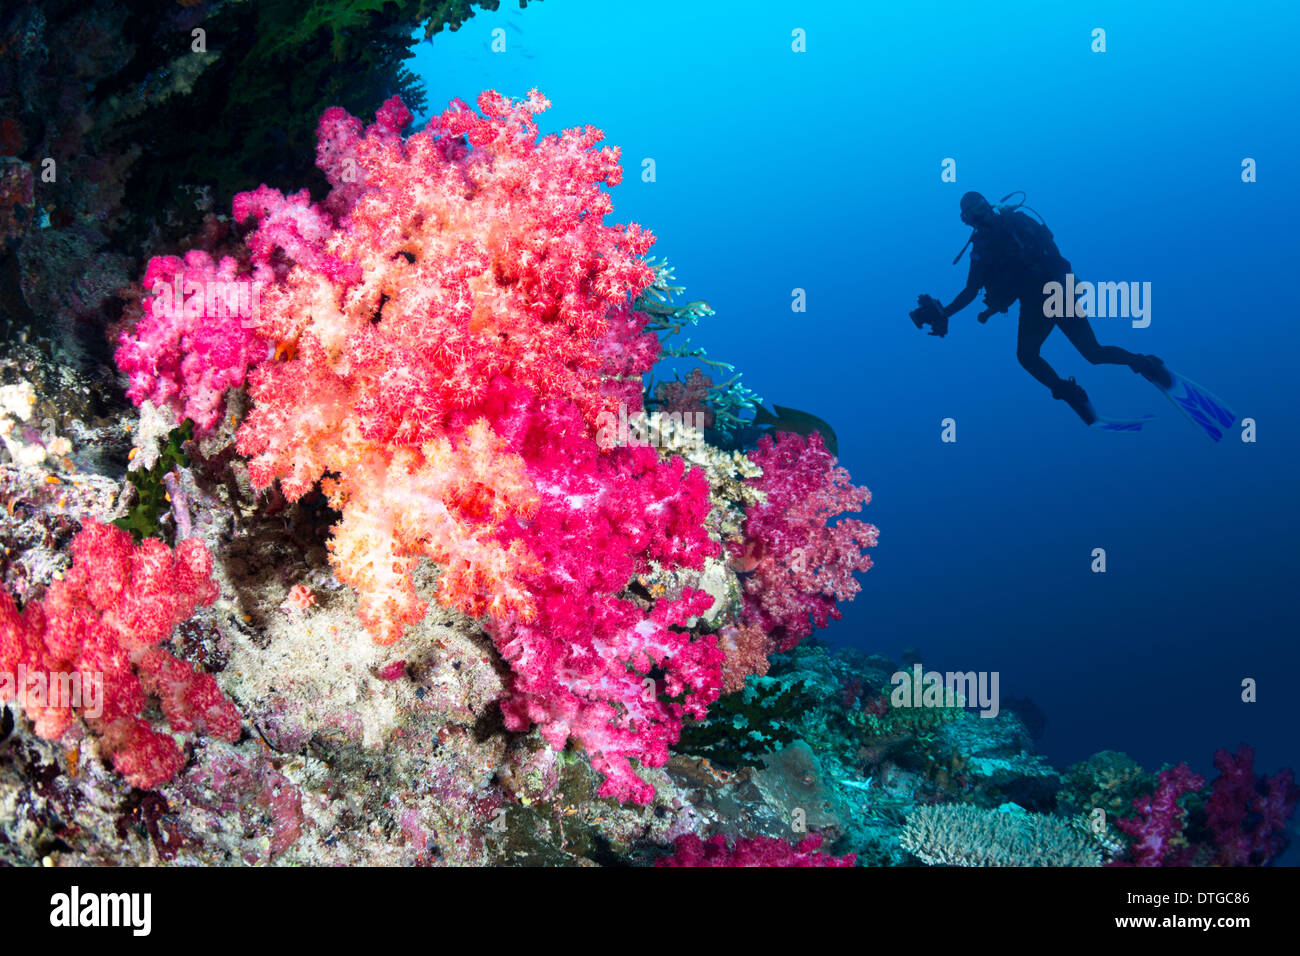 Taucher schwimmt durch einen wunderschönen tropischen Riff voller pulsierenden Weichkorallen in lila und orange. Stockfoto